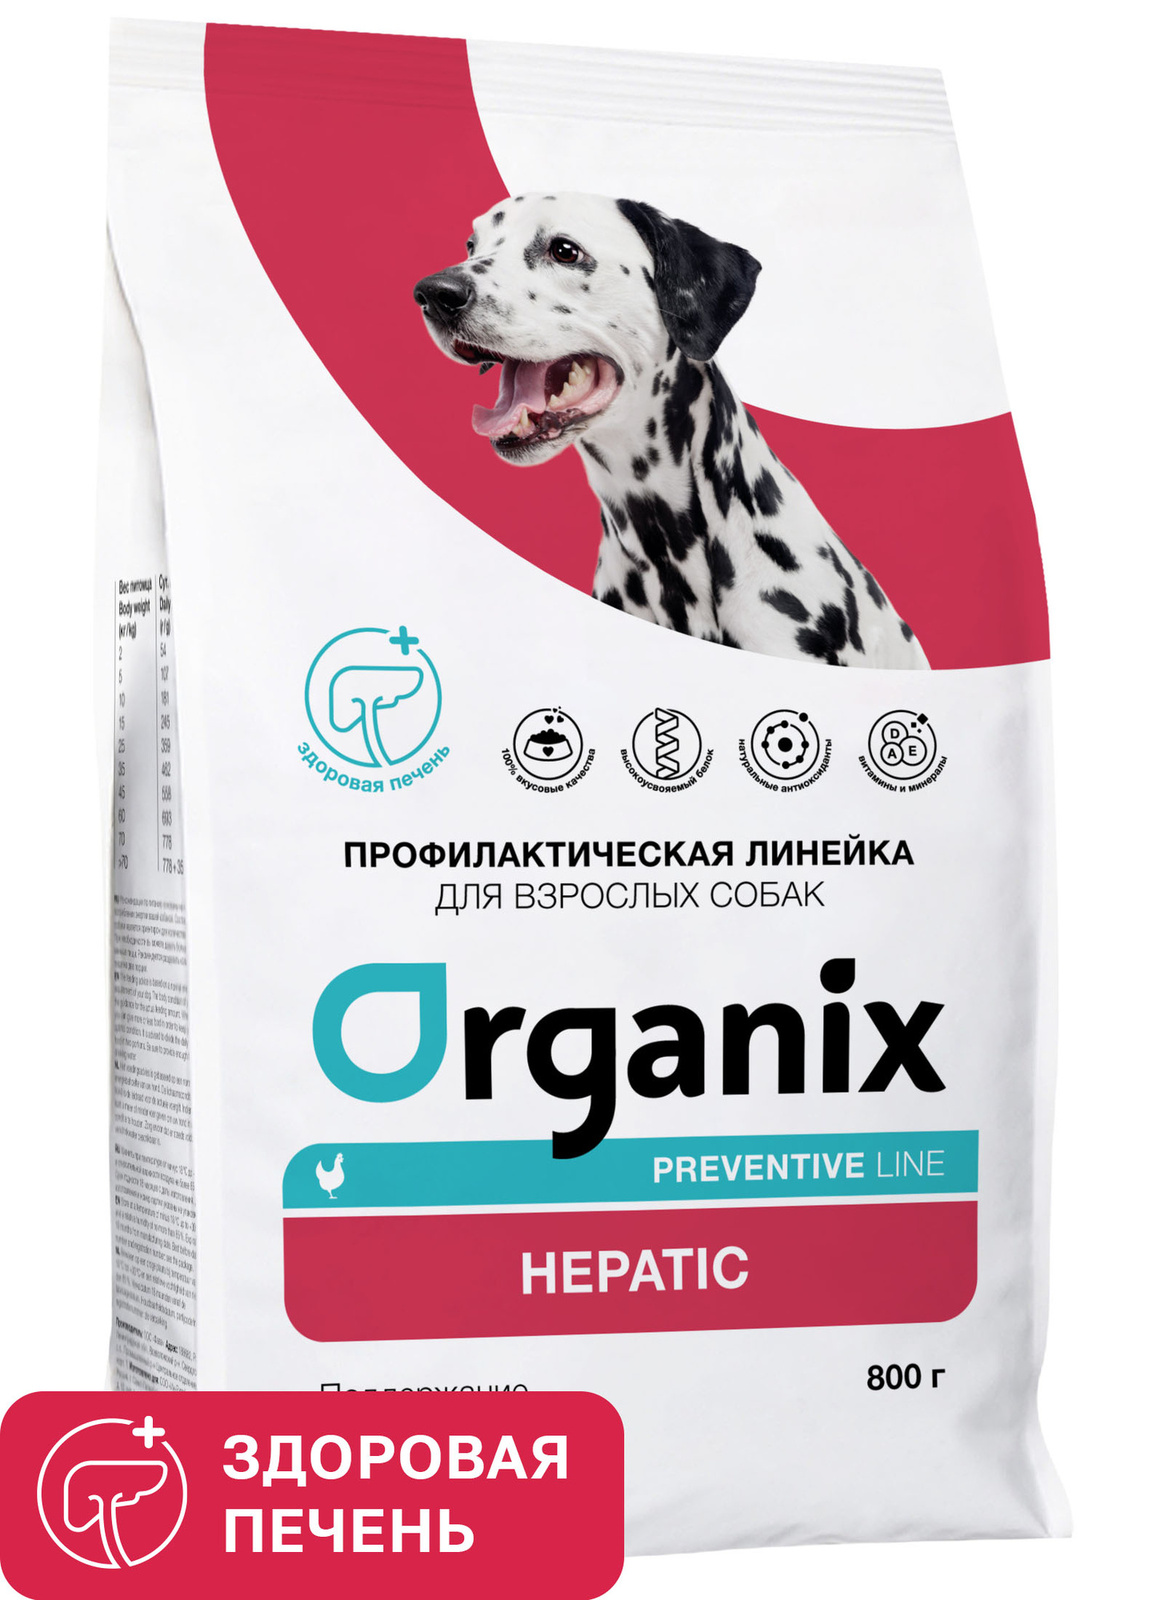 Organix Preventive Line Organix Preventive Line hepatic сухой корм для собак Поддержание здоровья печени (800 г)